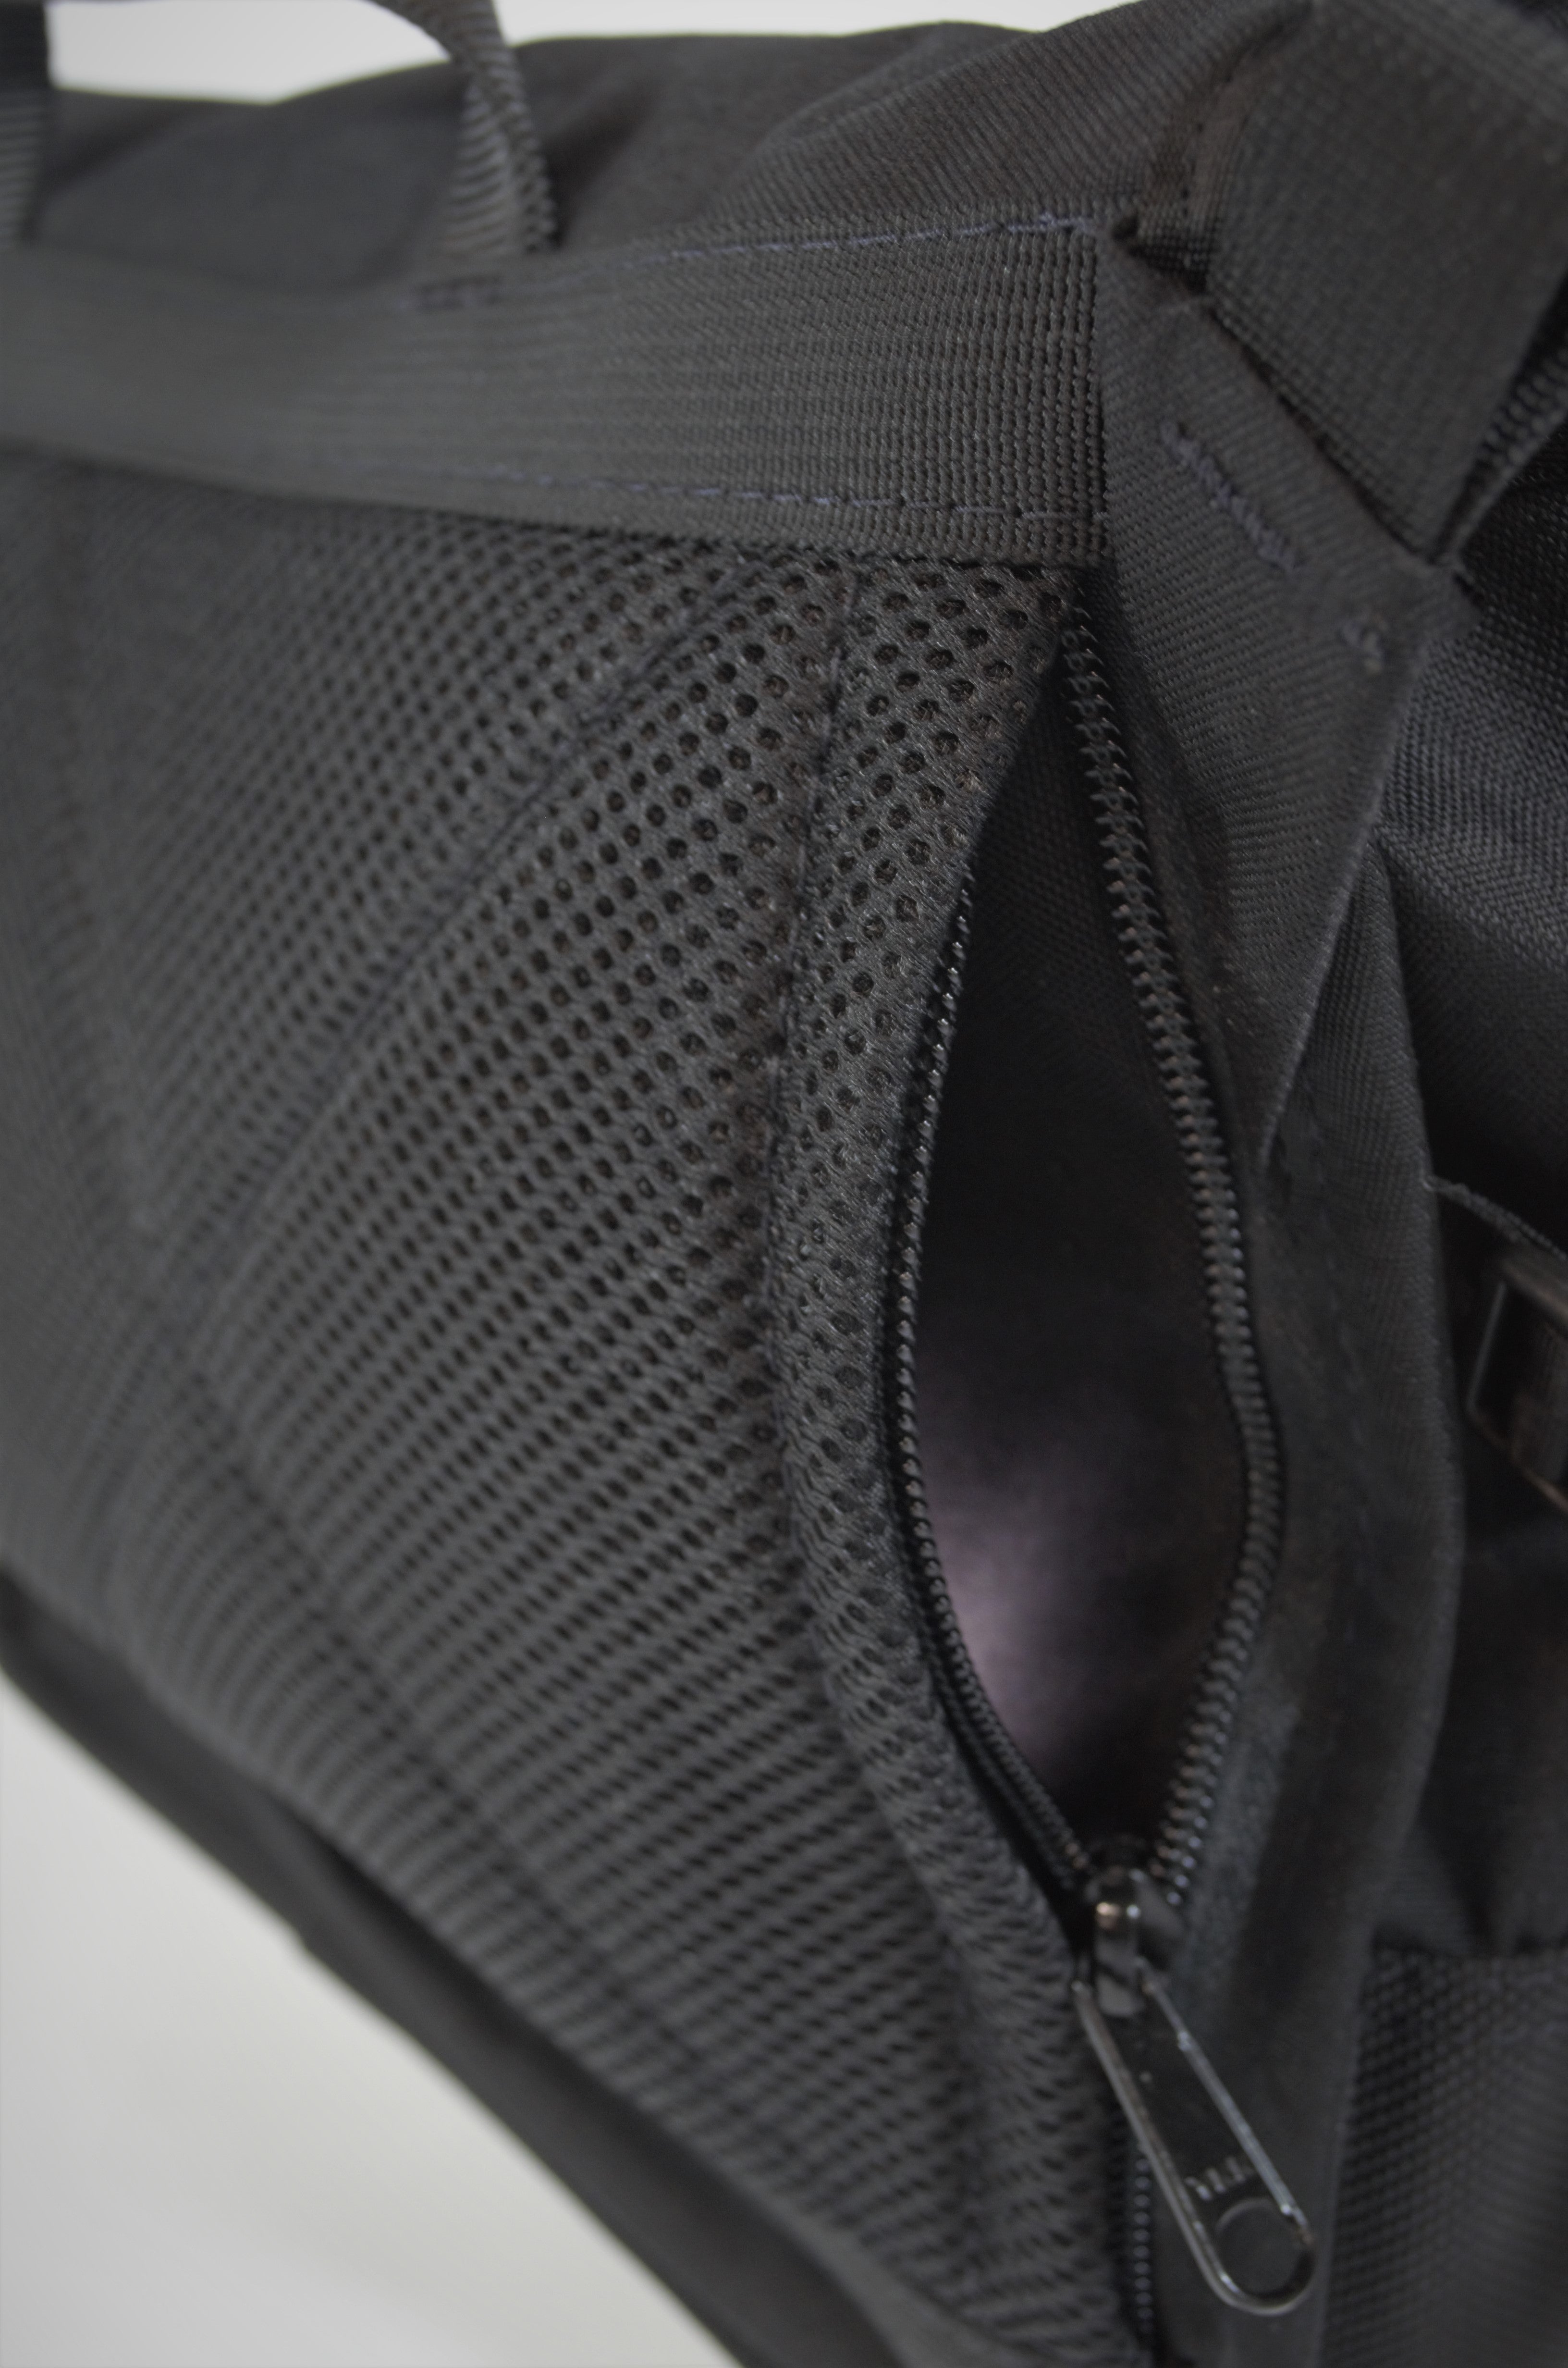 Flux Shoulder Bag Leather - Limited Edition